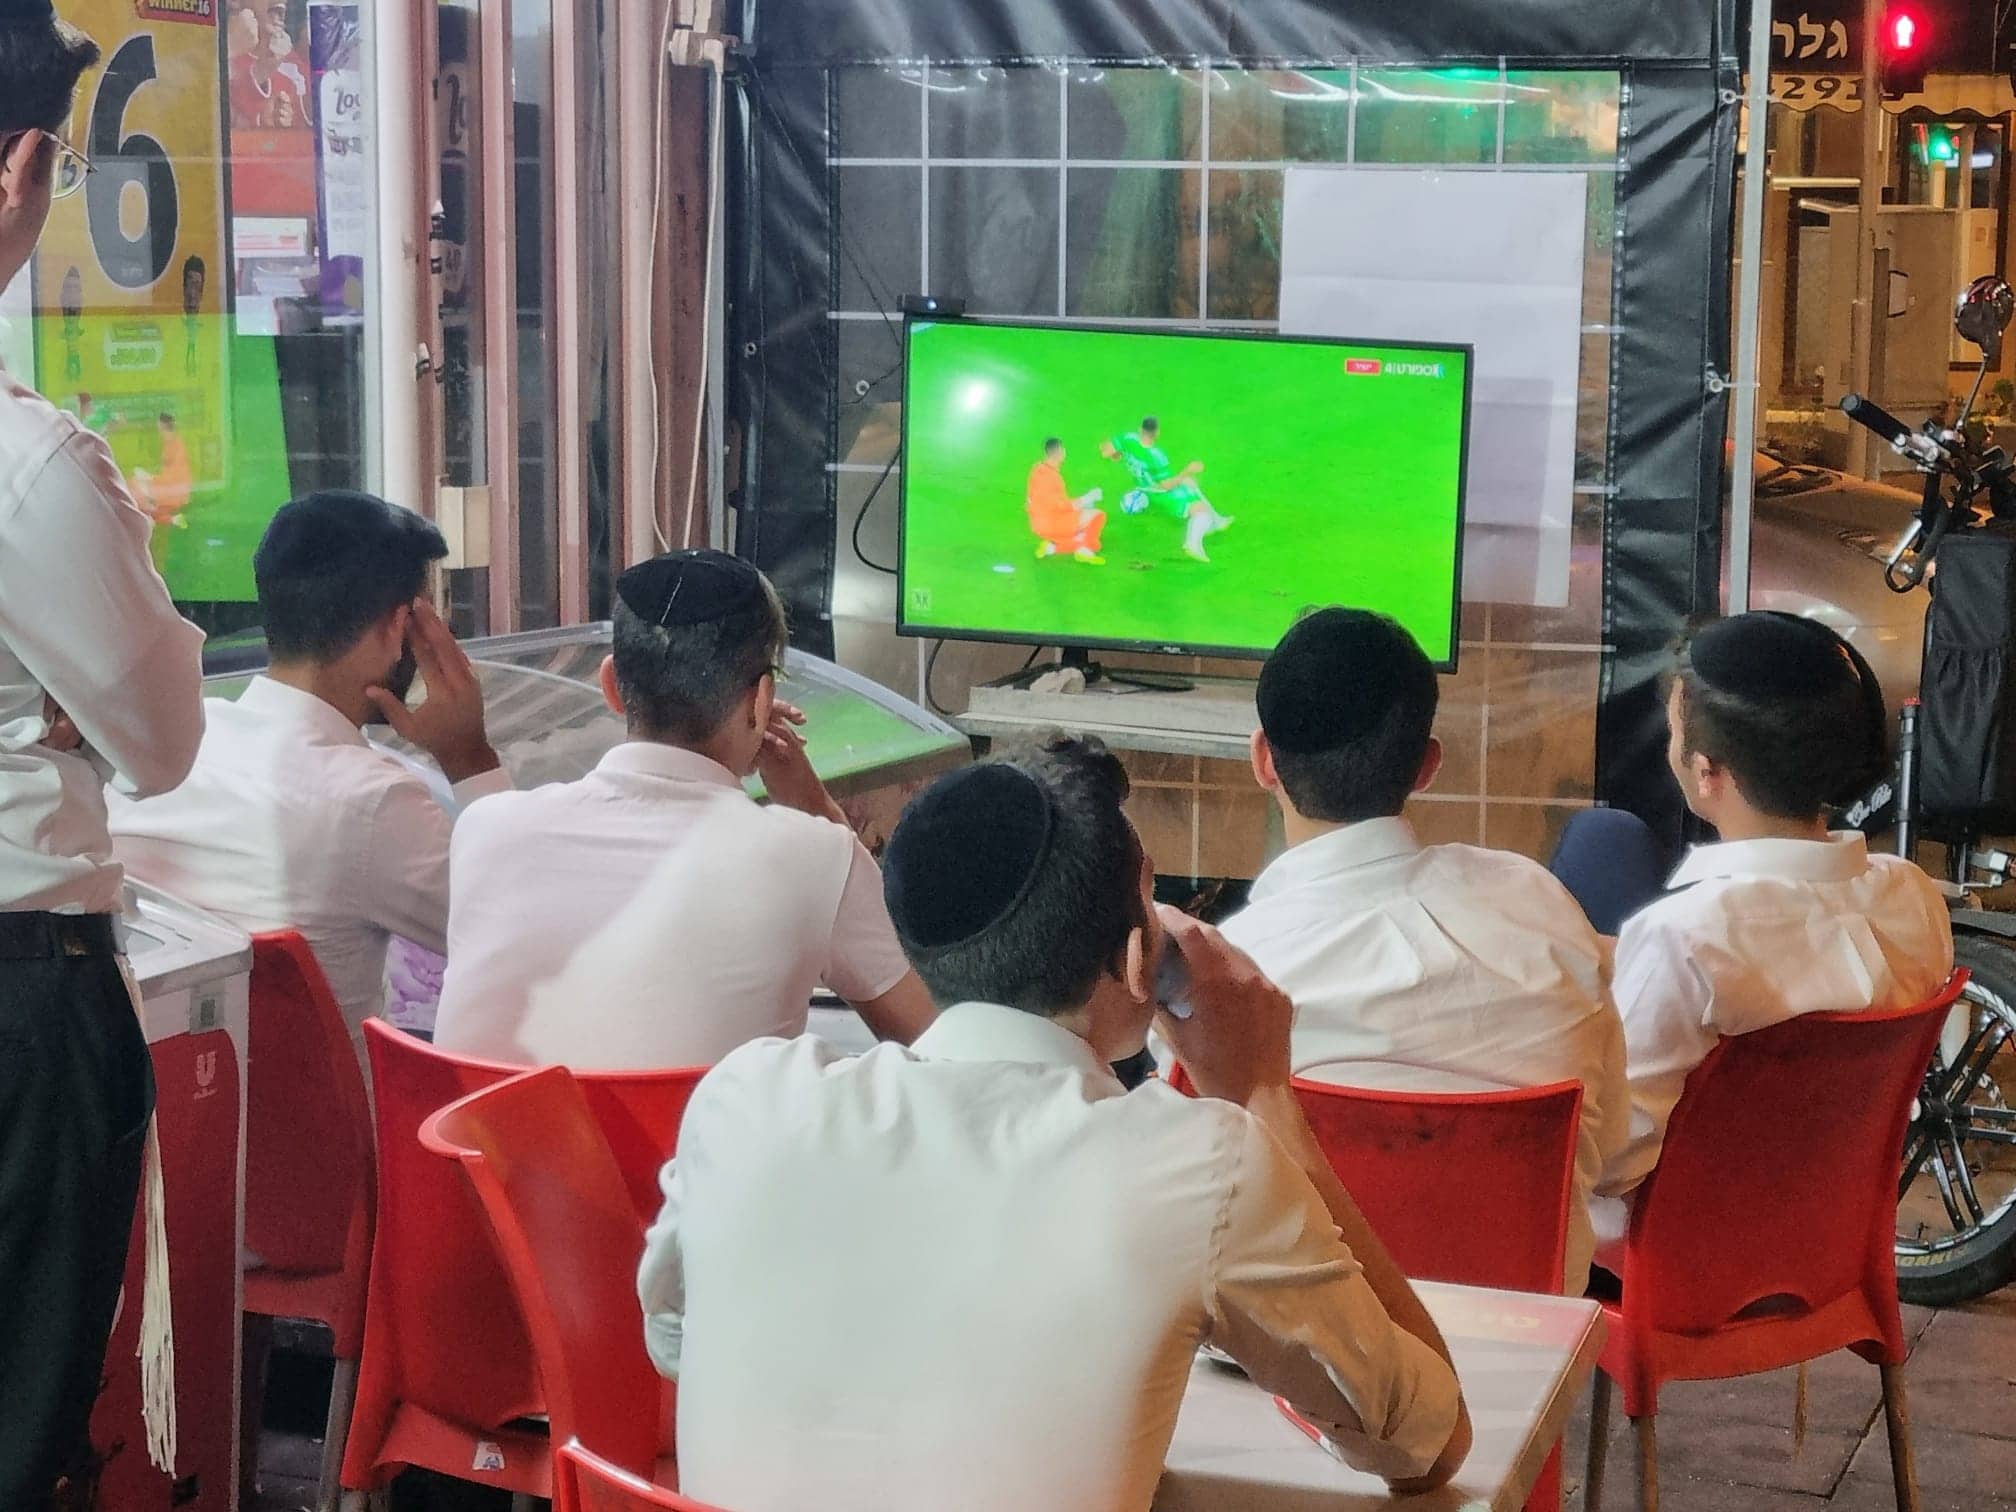 צעירים חרדים צופים במשחק כדורגל בפיצוציה רמת גן (צילום: תני גולדשטיין)